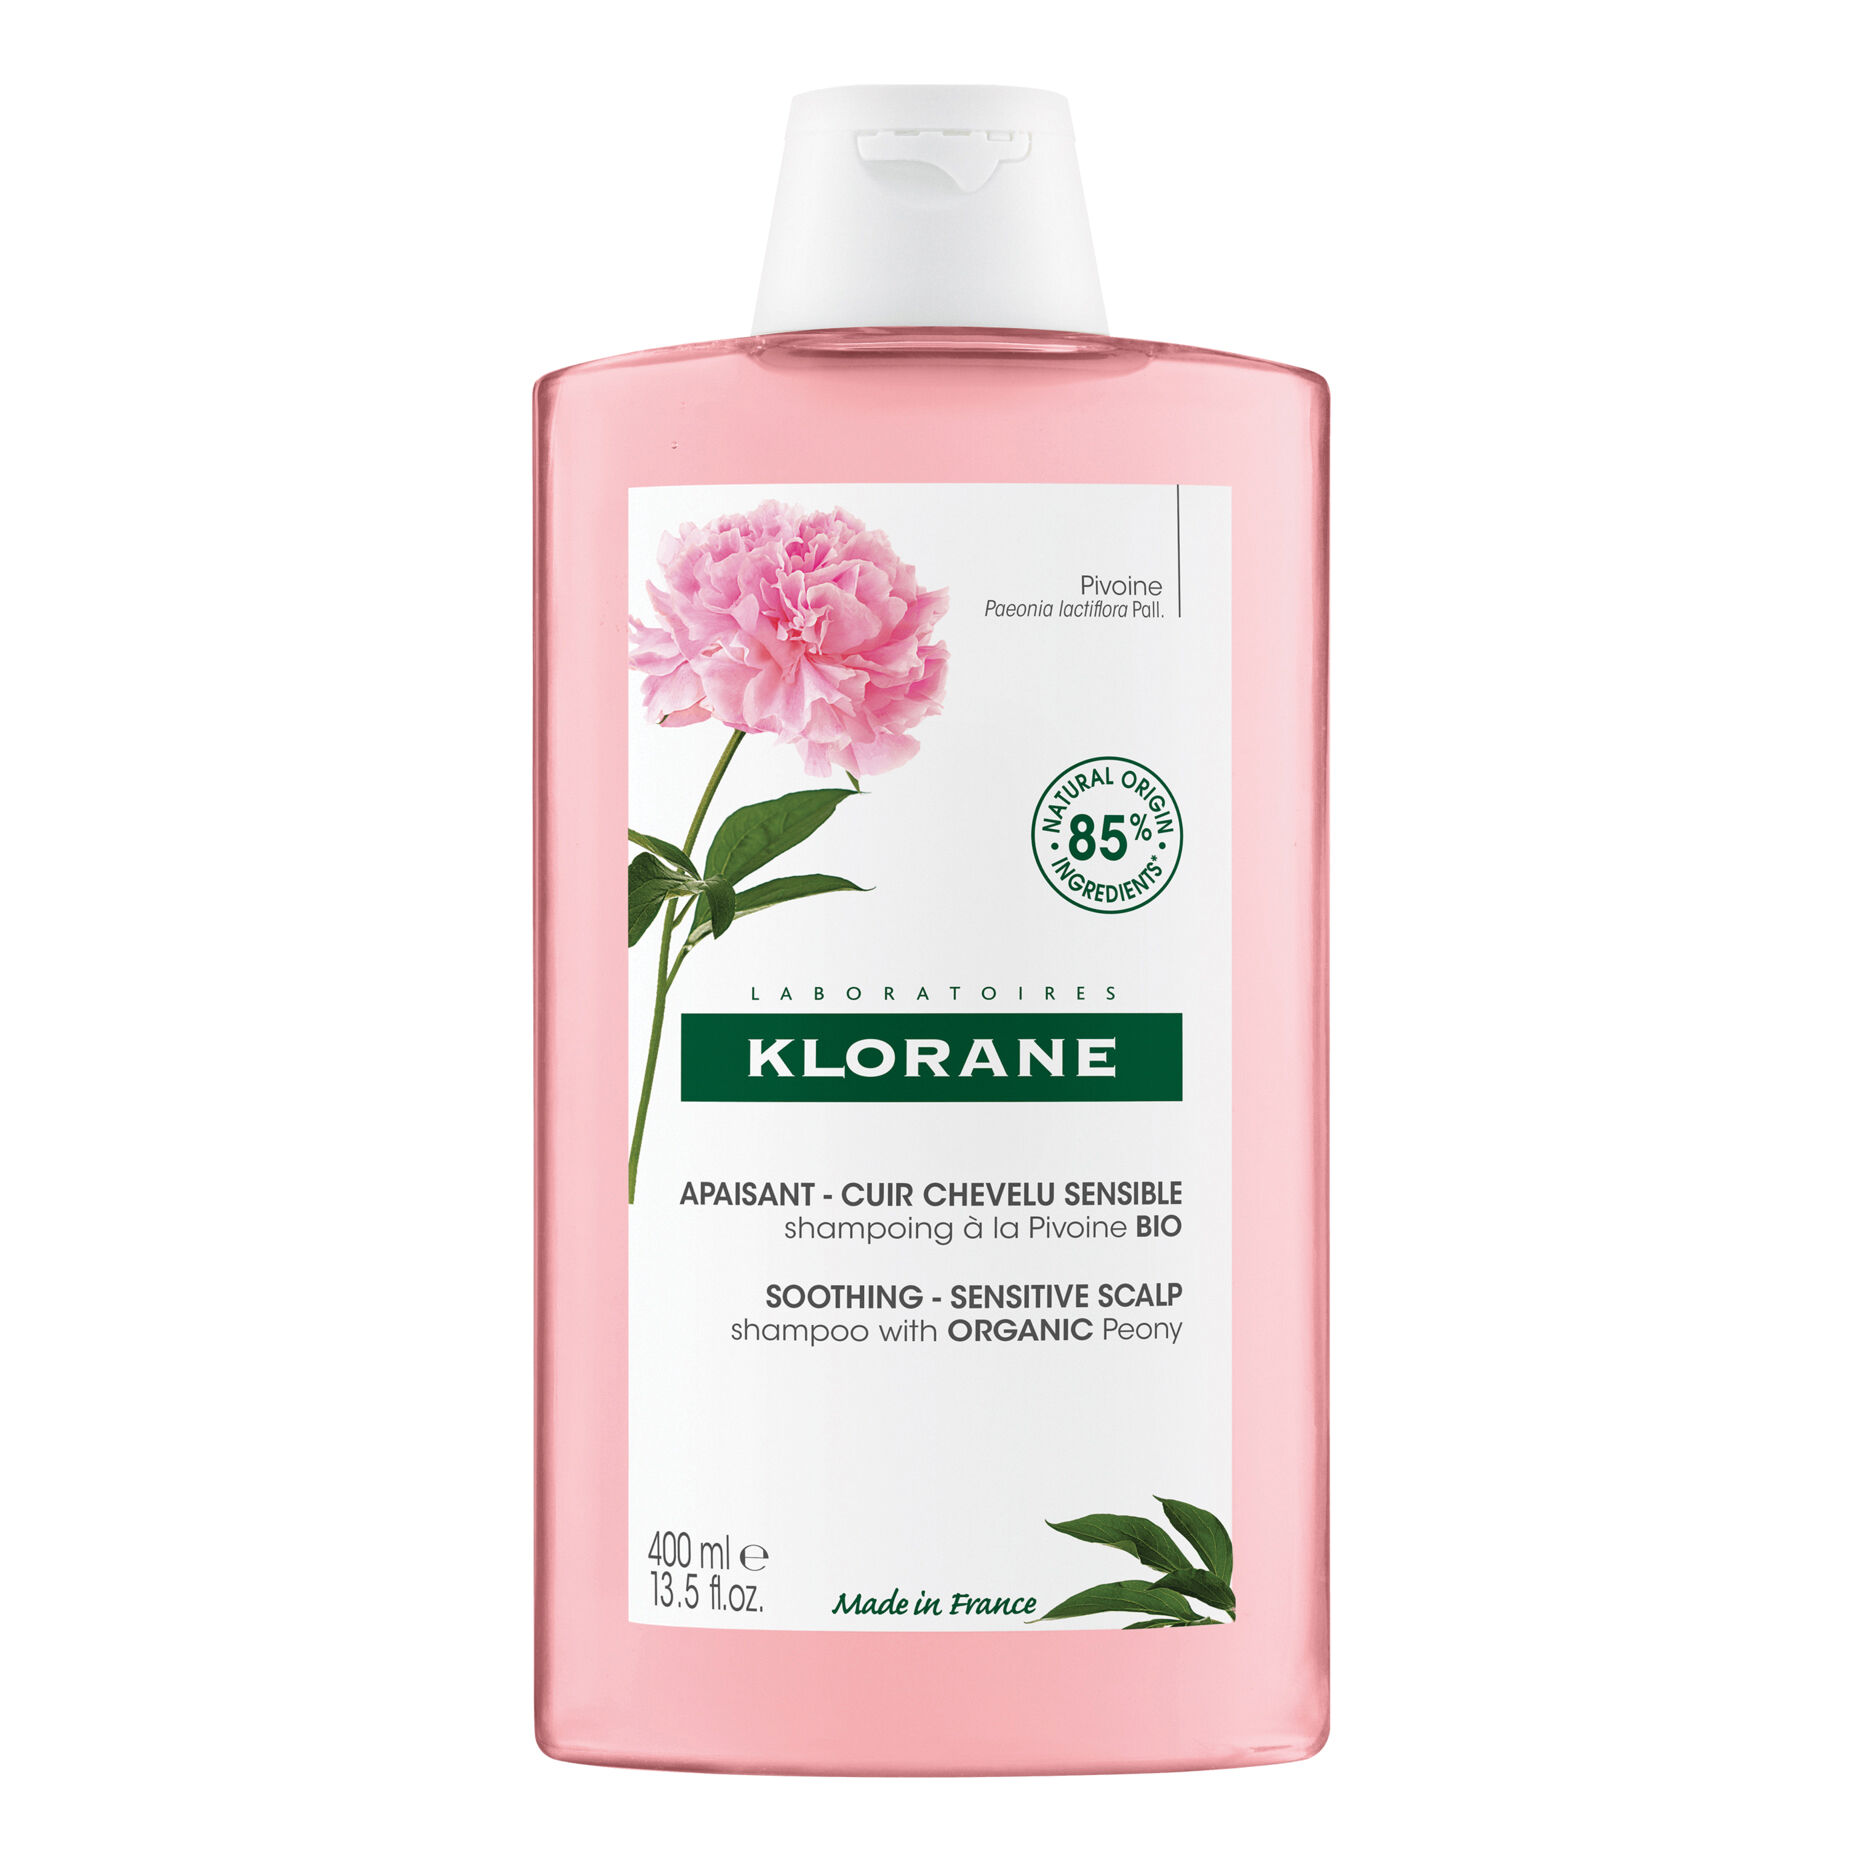 Klorane shampoo peon bio 400ml